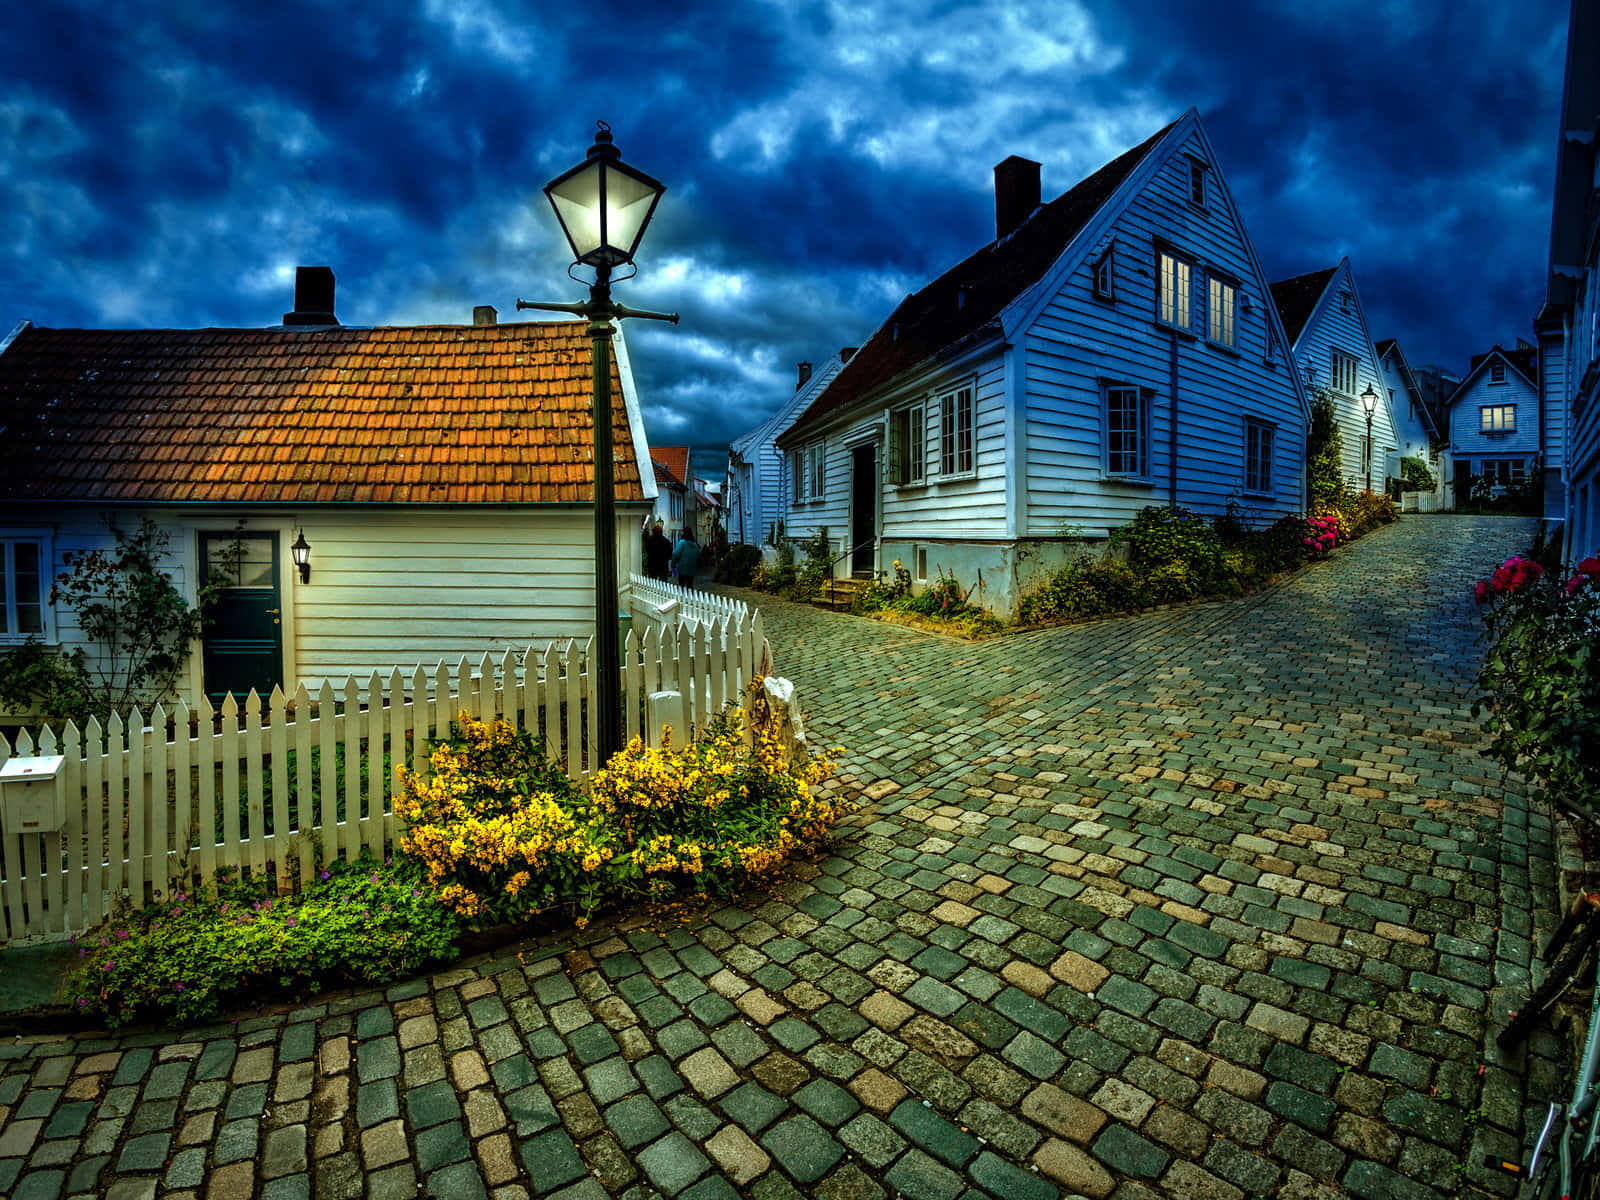 Stavanger Old Town Cobblestone Streetat Dusk Wallpaper